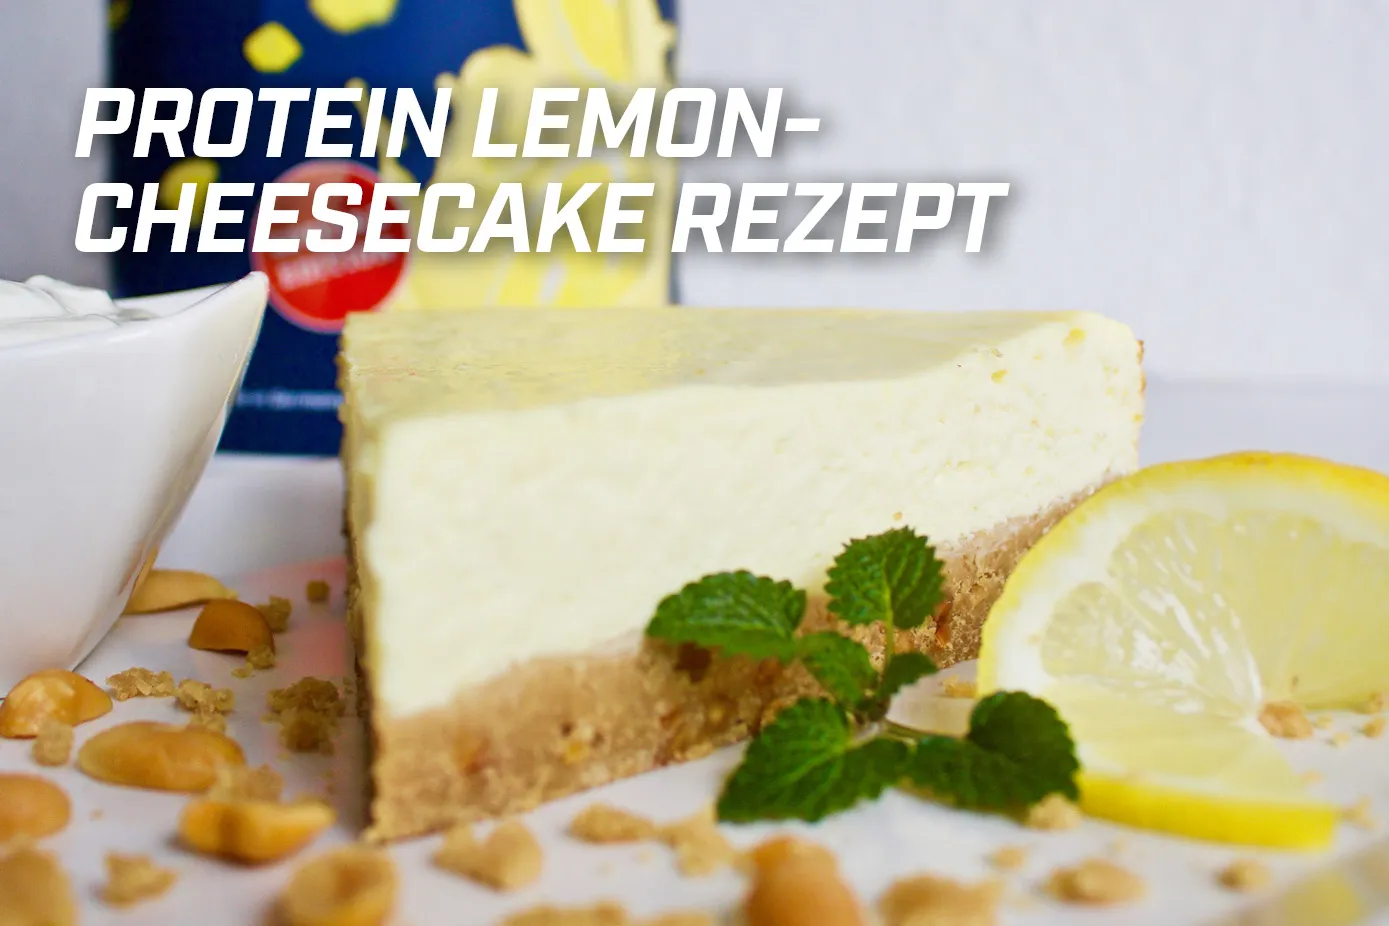 22-03-18-protein-lemon-cheesecake-rezept-kostenlos-energybody-systems